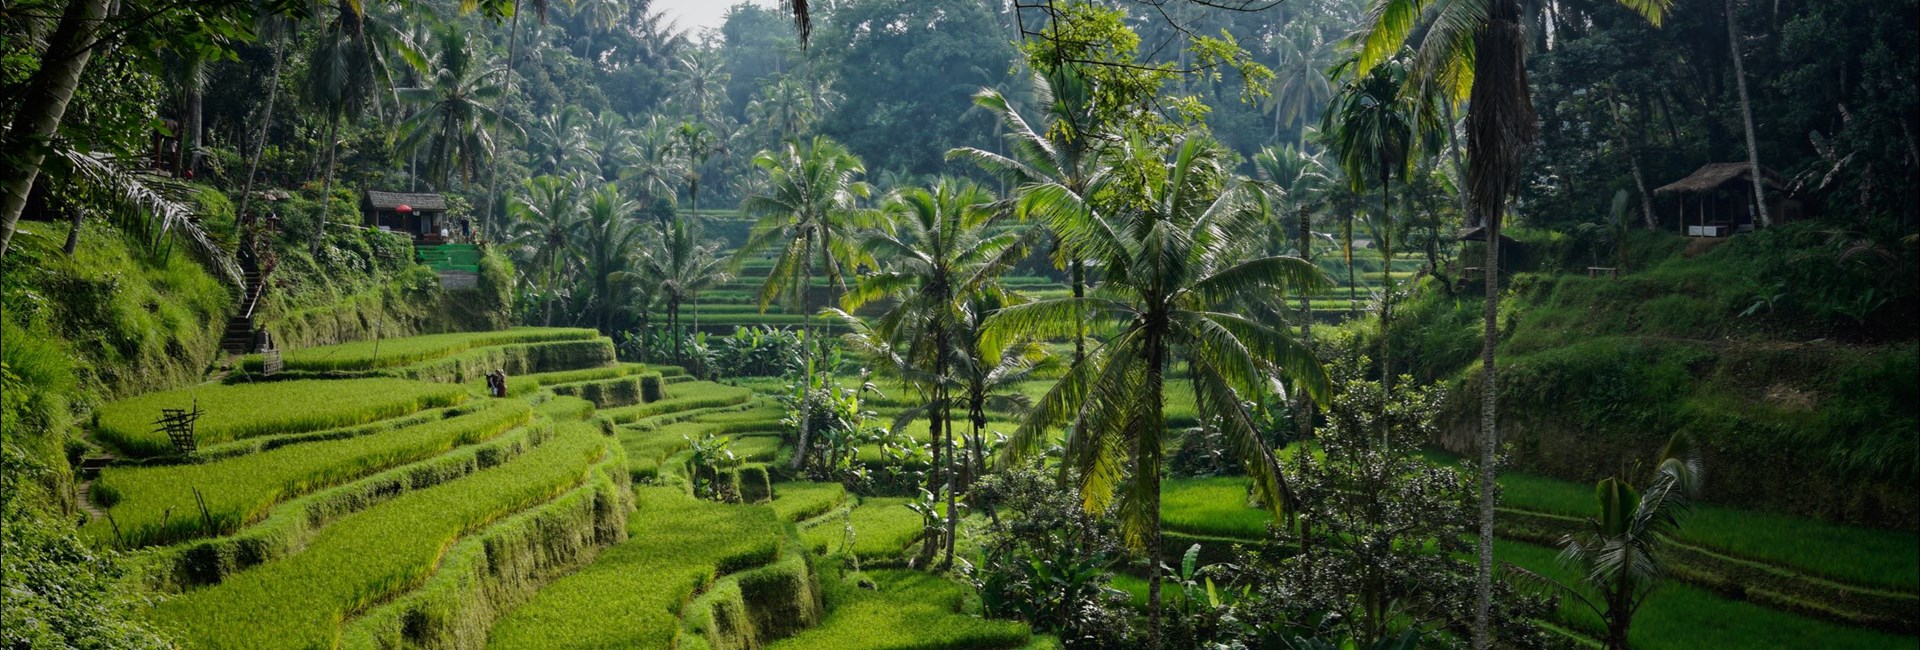 Luscious foliage in Bali